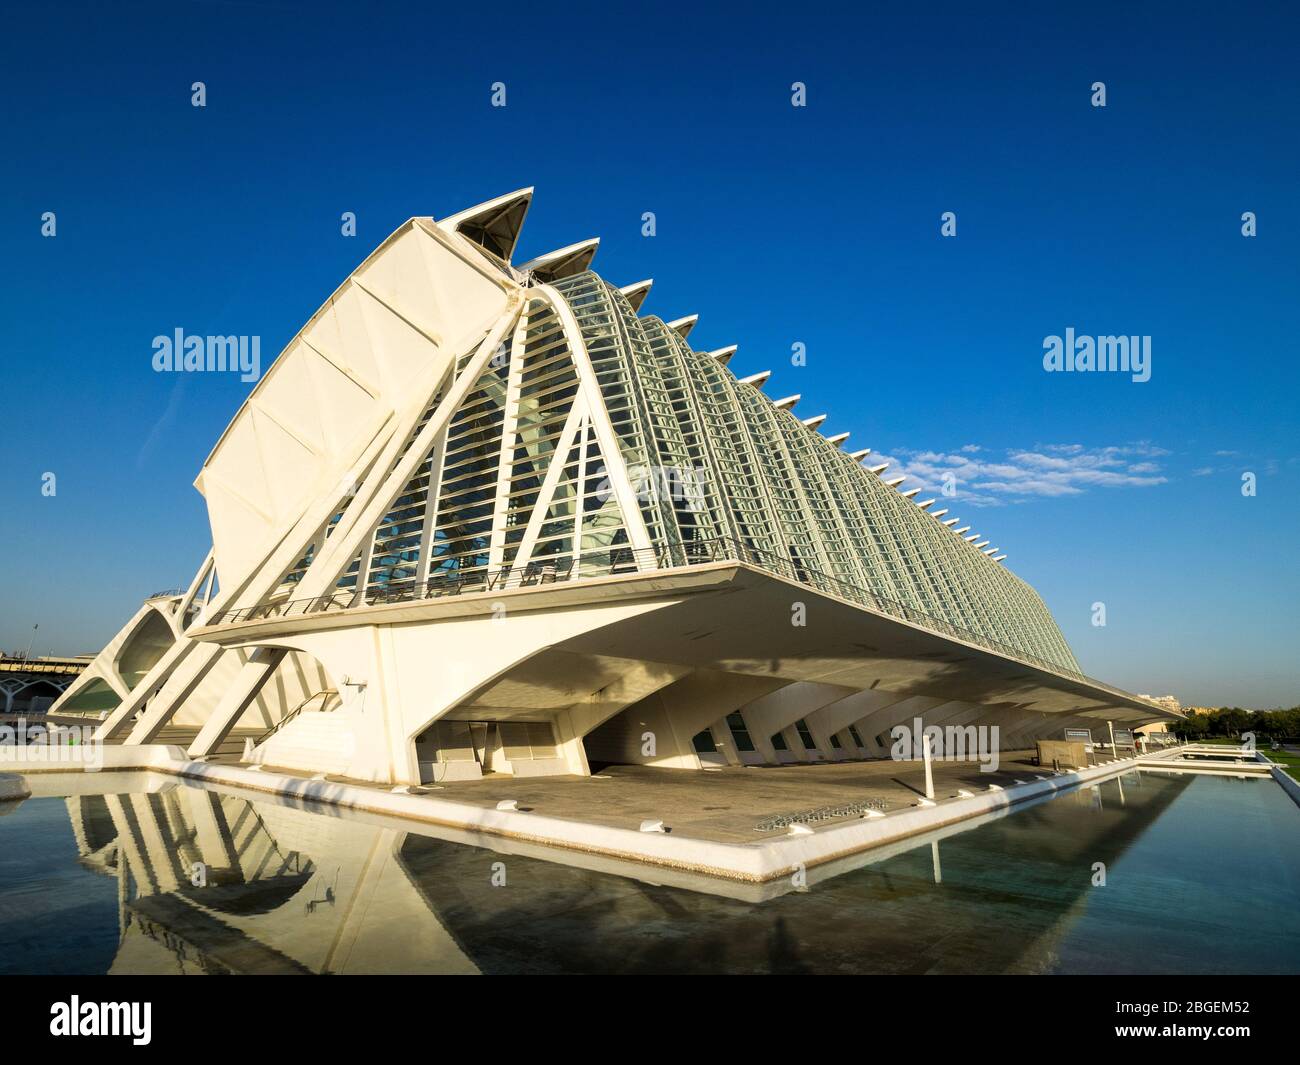 Architektur von Valencia - Príncipe Felipe Museum der Wissenschaften in der Stadt der Künste und Wissenschaften in Valencia, Architekt Santiago Calatrava (eröffnet 2000) Stockfoto